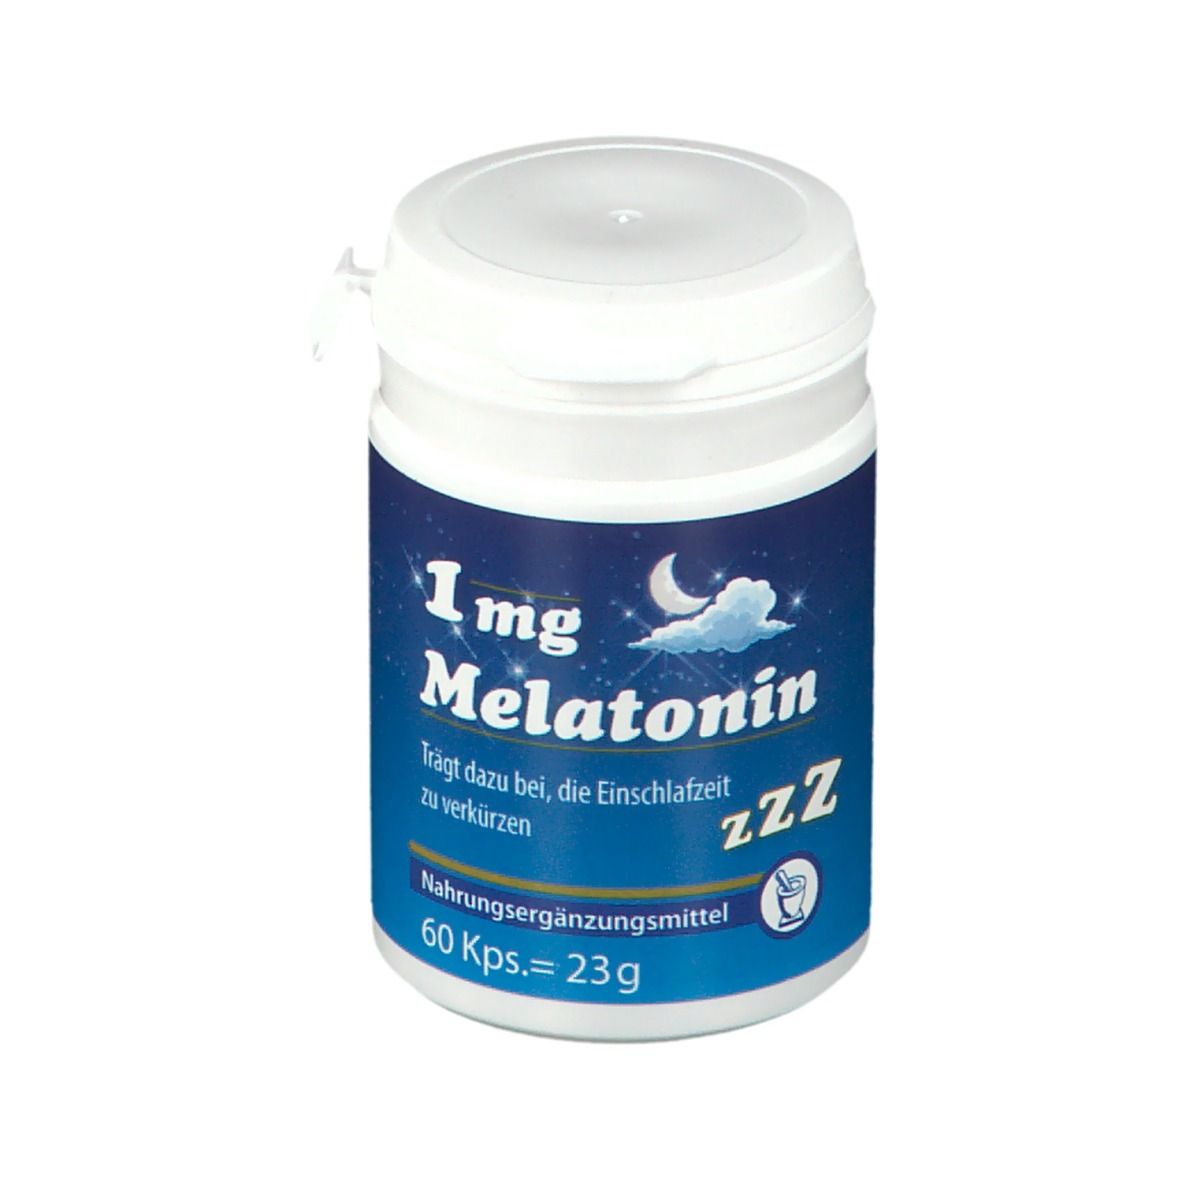 1 mg Melatonin Einschlafkapseln